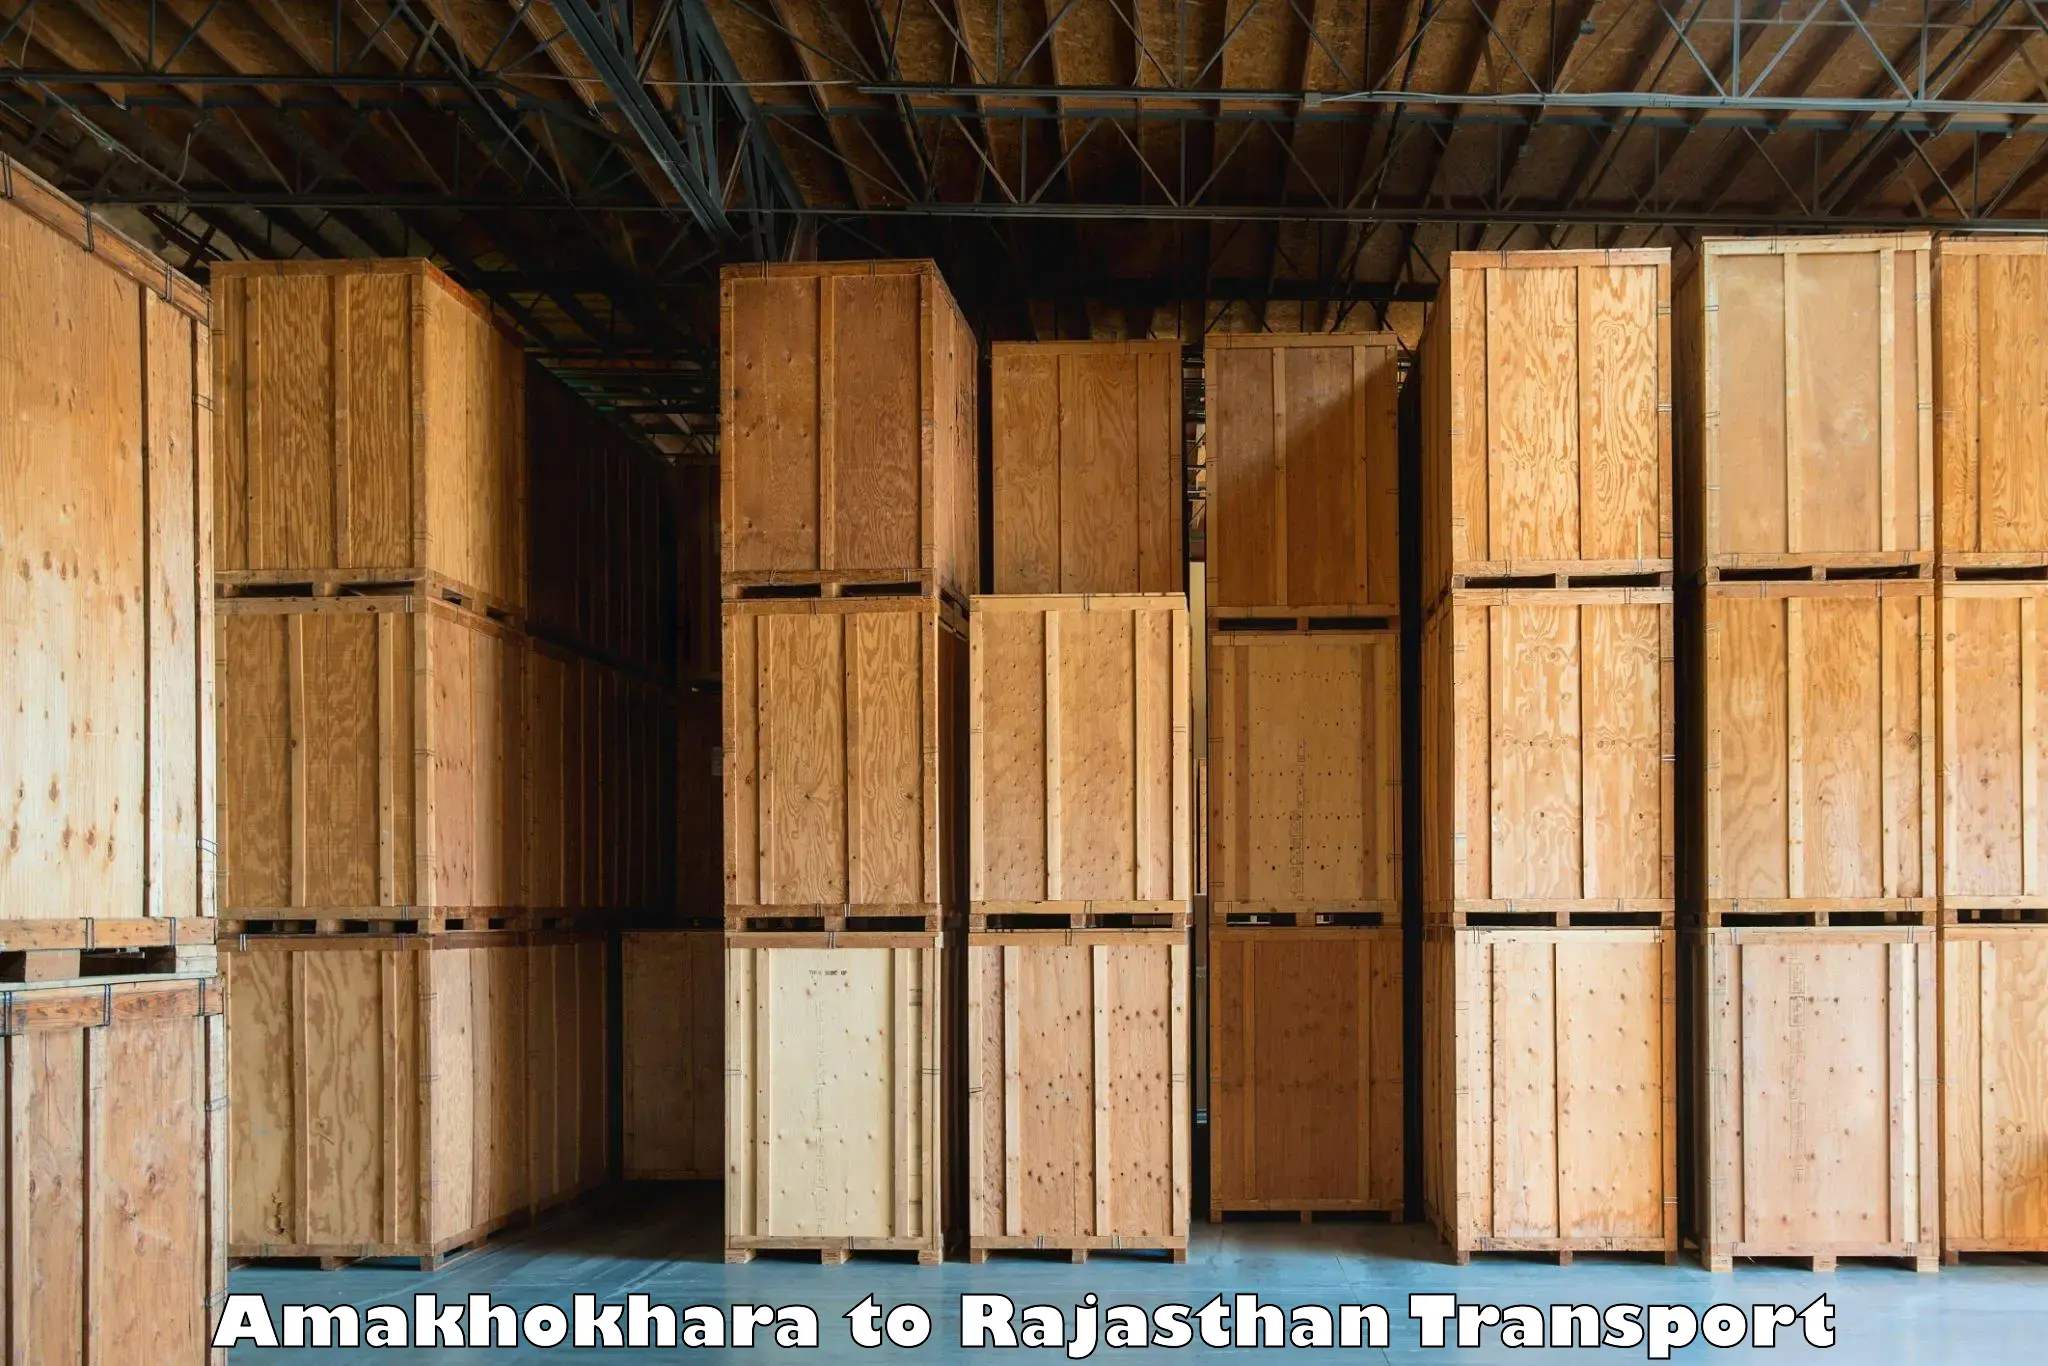 Commercial transport service Amakhokhara to Banasthali Vidyapith